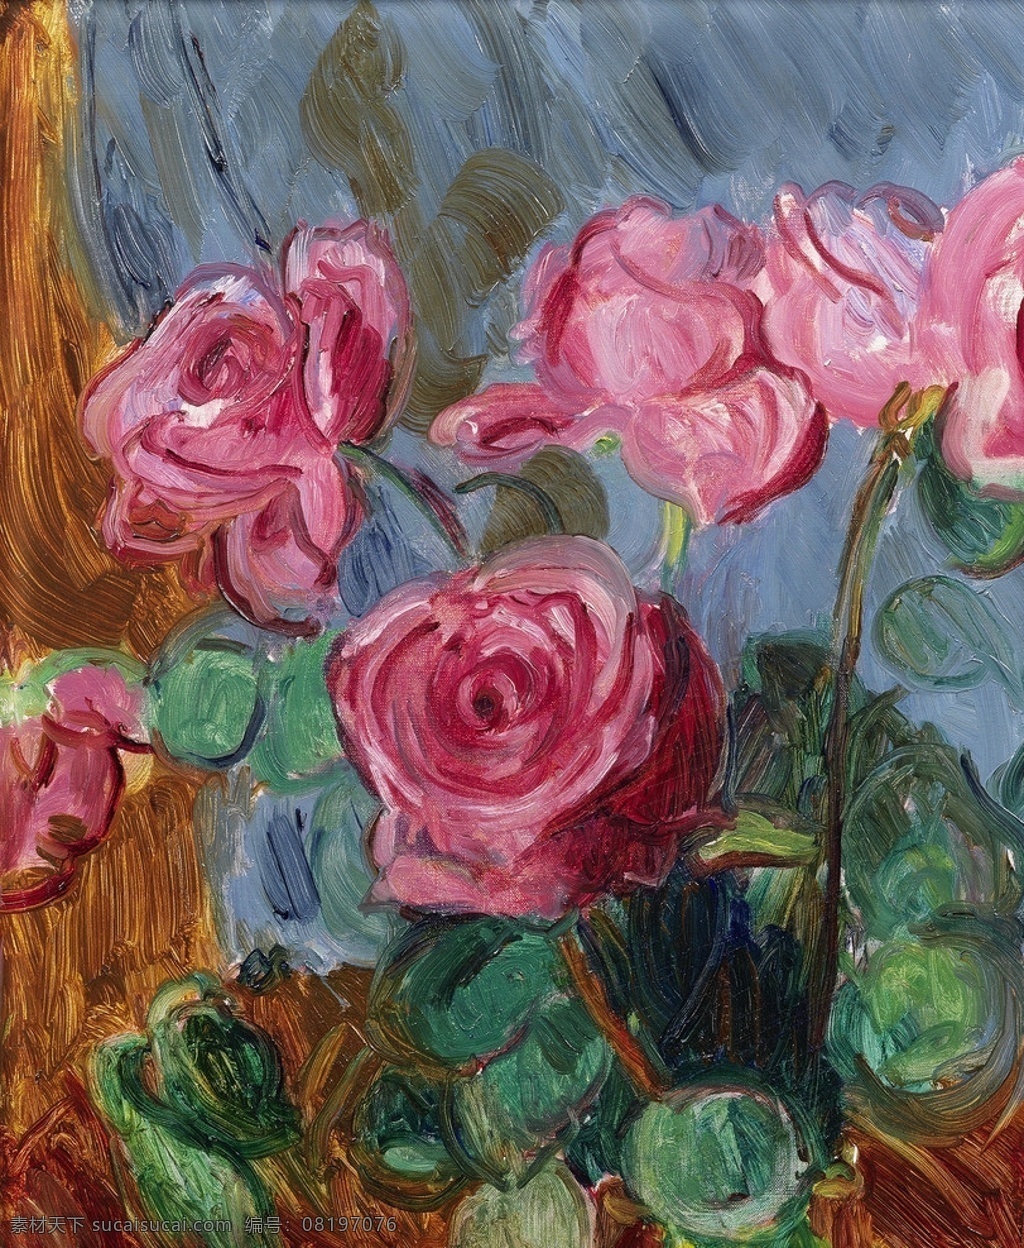 玫瑰花 印象画派 成型的玫瑰 四朵 花盆 20世纪油画 油画 绘画书法 文化艺术